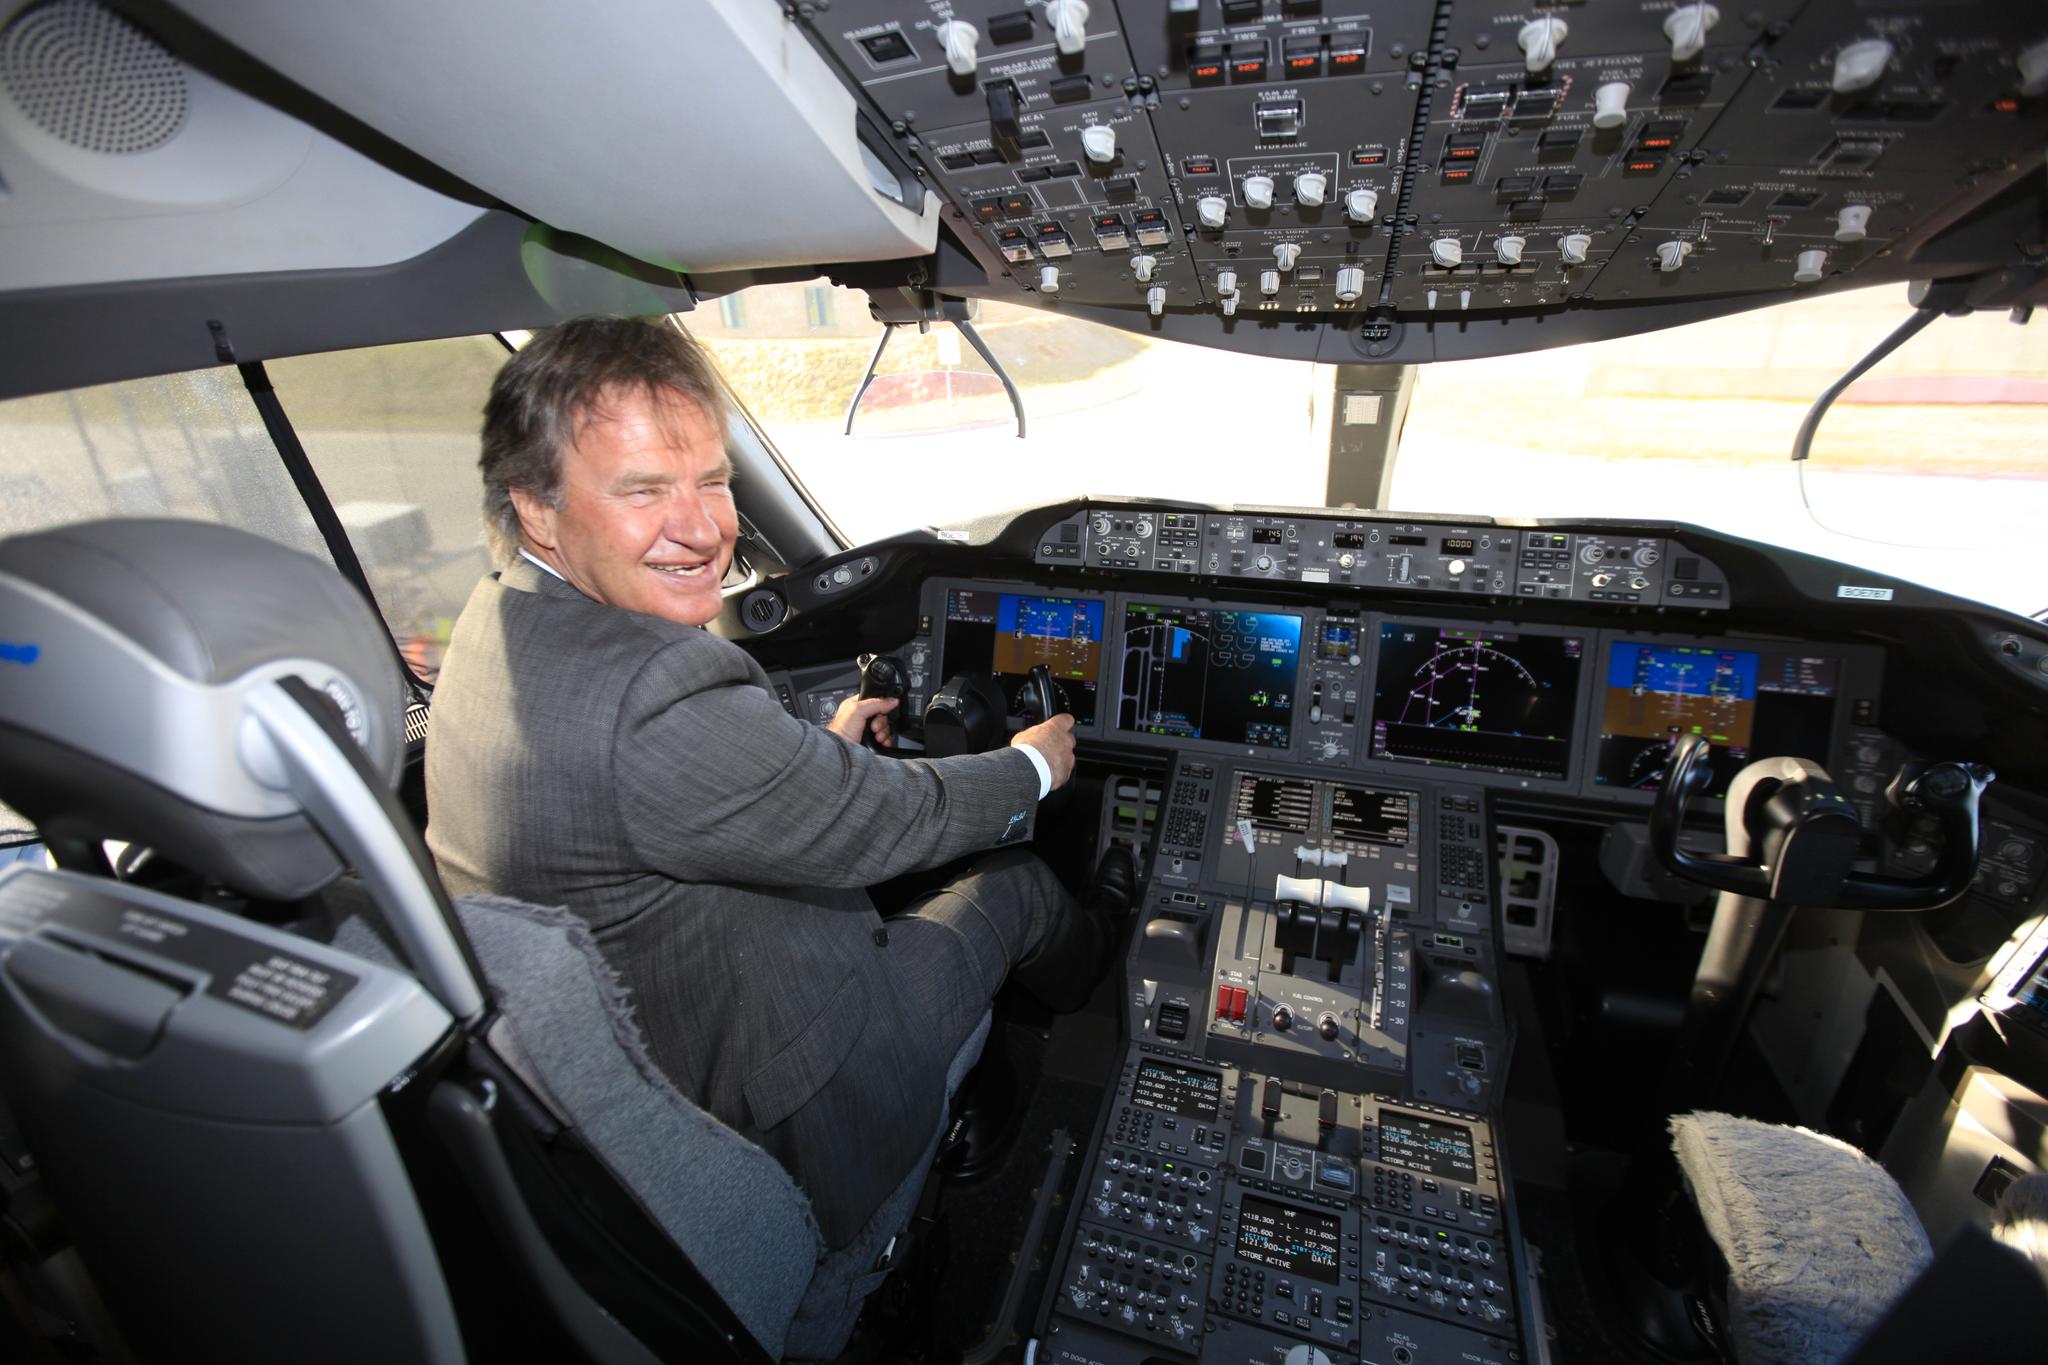 I 2011 lanserte Kjos planene for å starte med langdistanseflyvninger, og dermed bli verdens eneste lavprisselskap med ruter over Atlanteren og fra Europa til Sørøst-Asia. Året etter ble han her fotografert i cockpiten til en Boeing 787 Dreamliner, flymodellen som gjorde satsingen mulig.